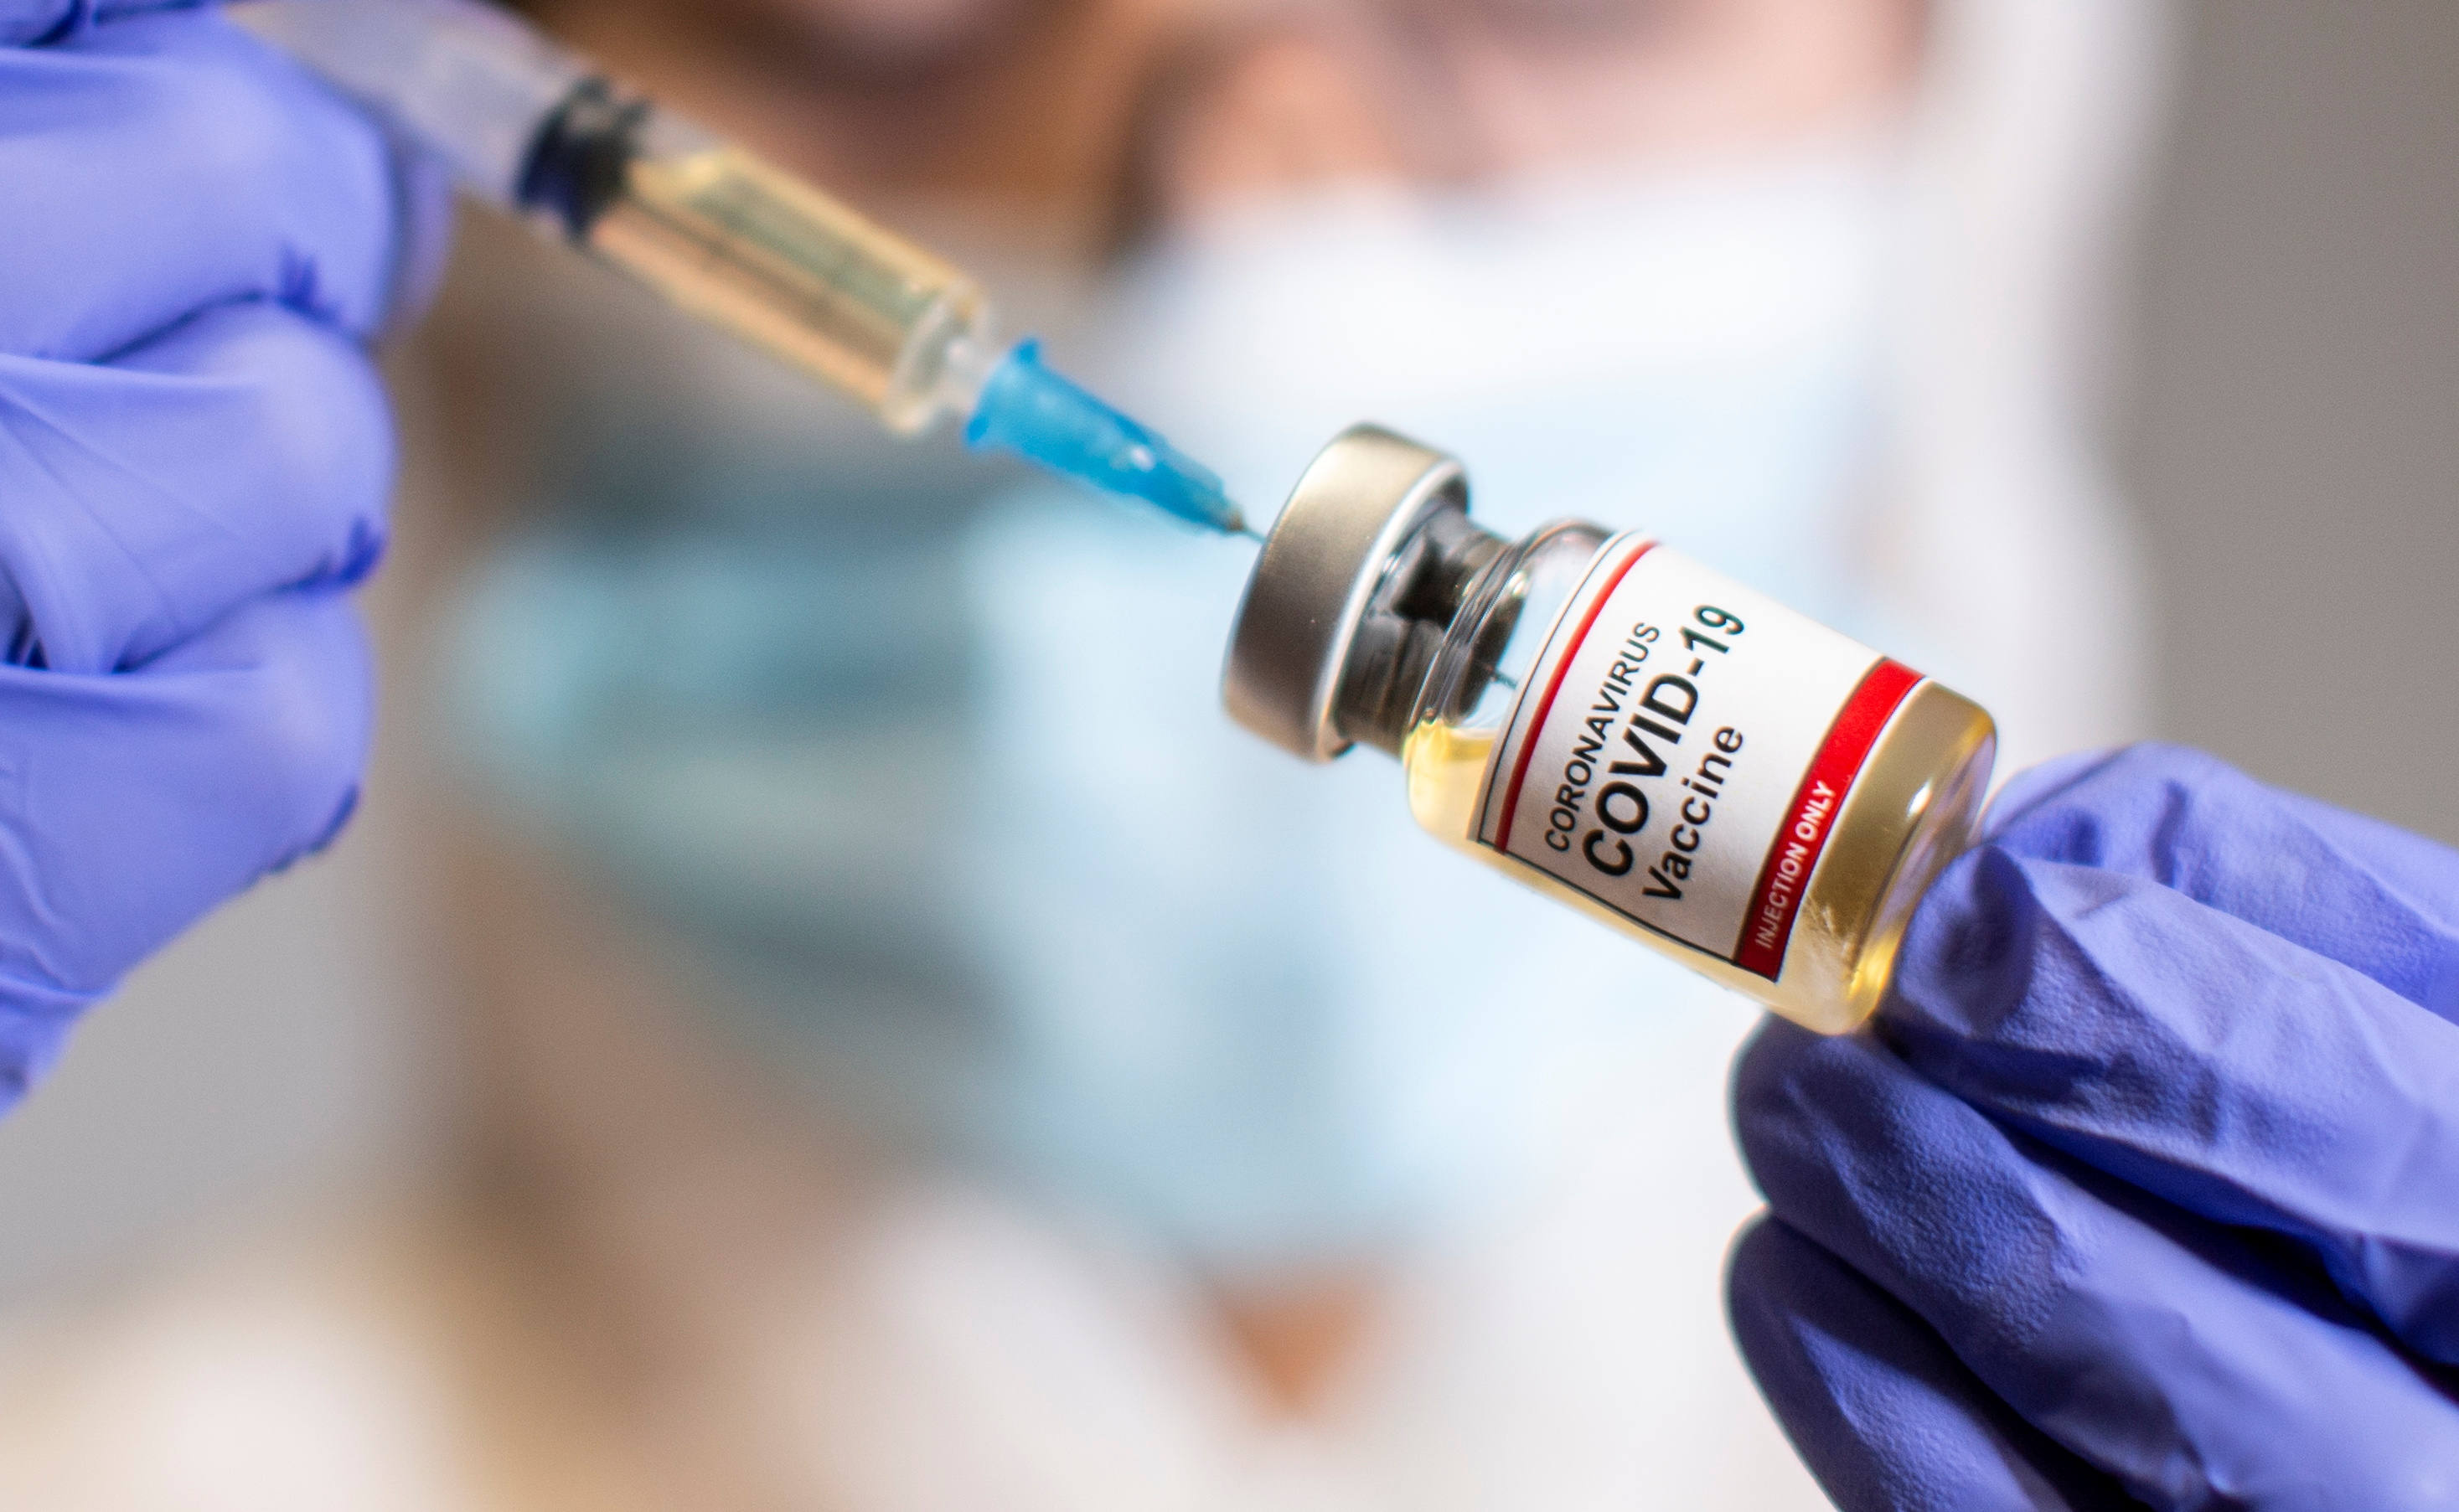 Pfizer afirma que su vacuna contra el Covid-19 es “eficaz en un 90%”, según primeros resultados de fase 3